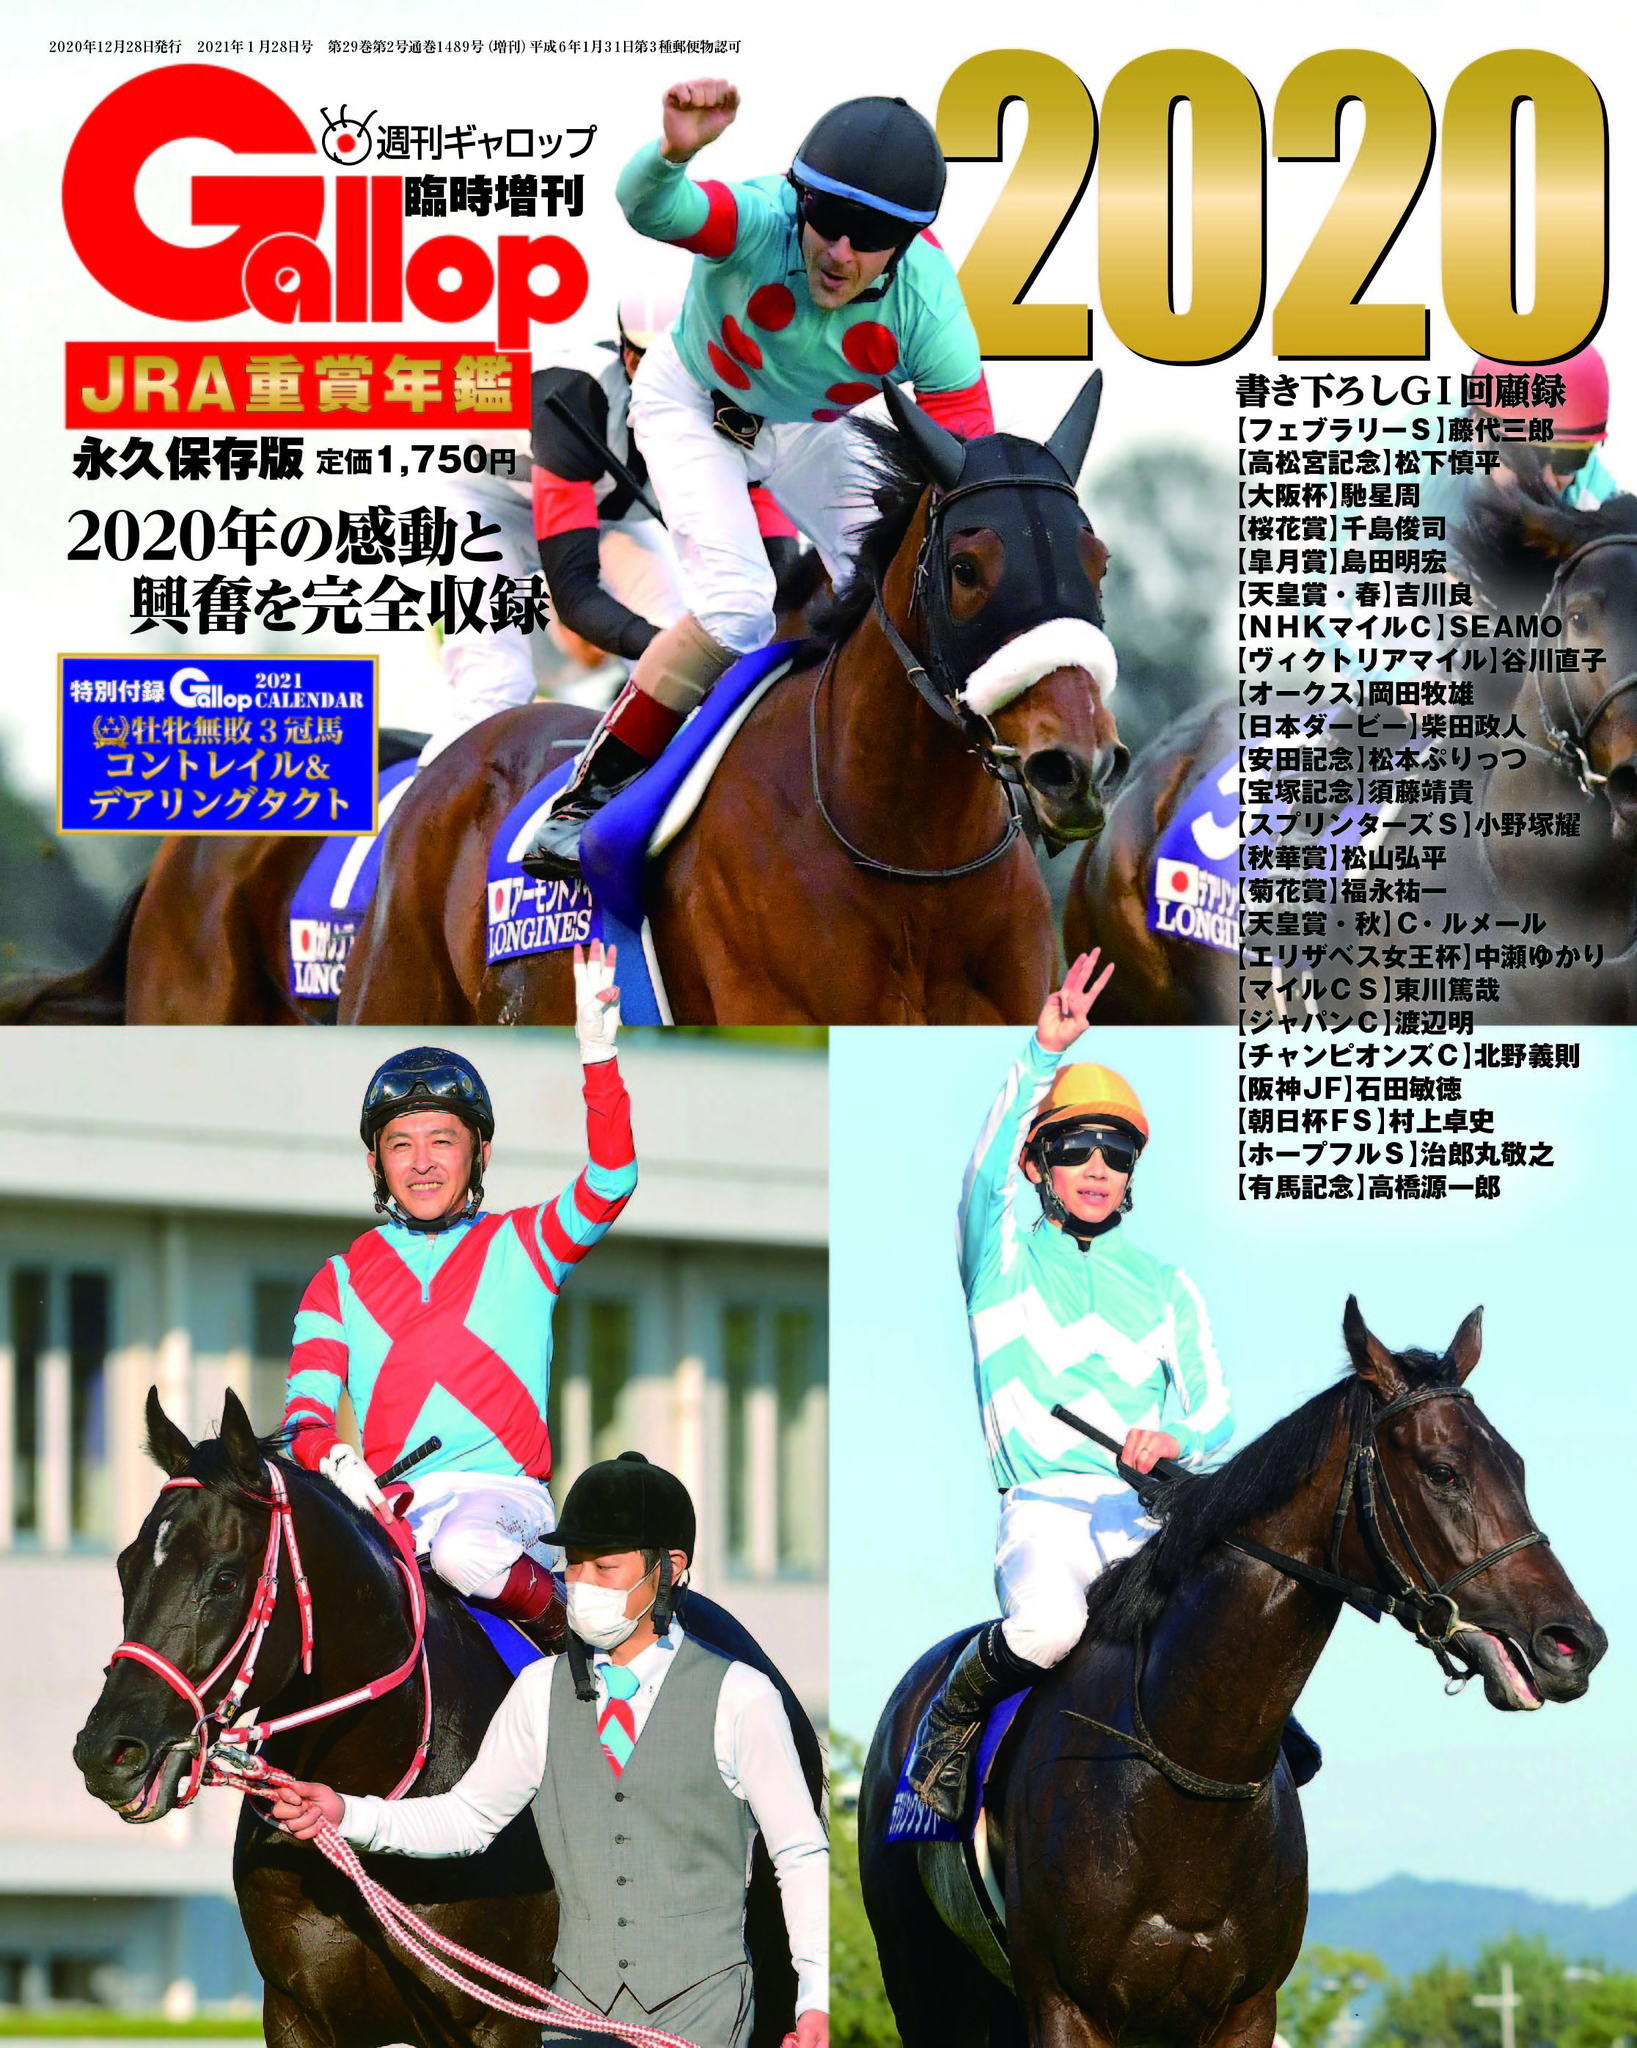 週刊ギャロップ最新号 競馬雑誌 Gallop ドバイワールドカップ - 趣味